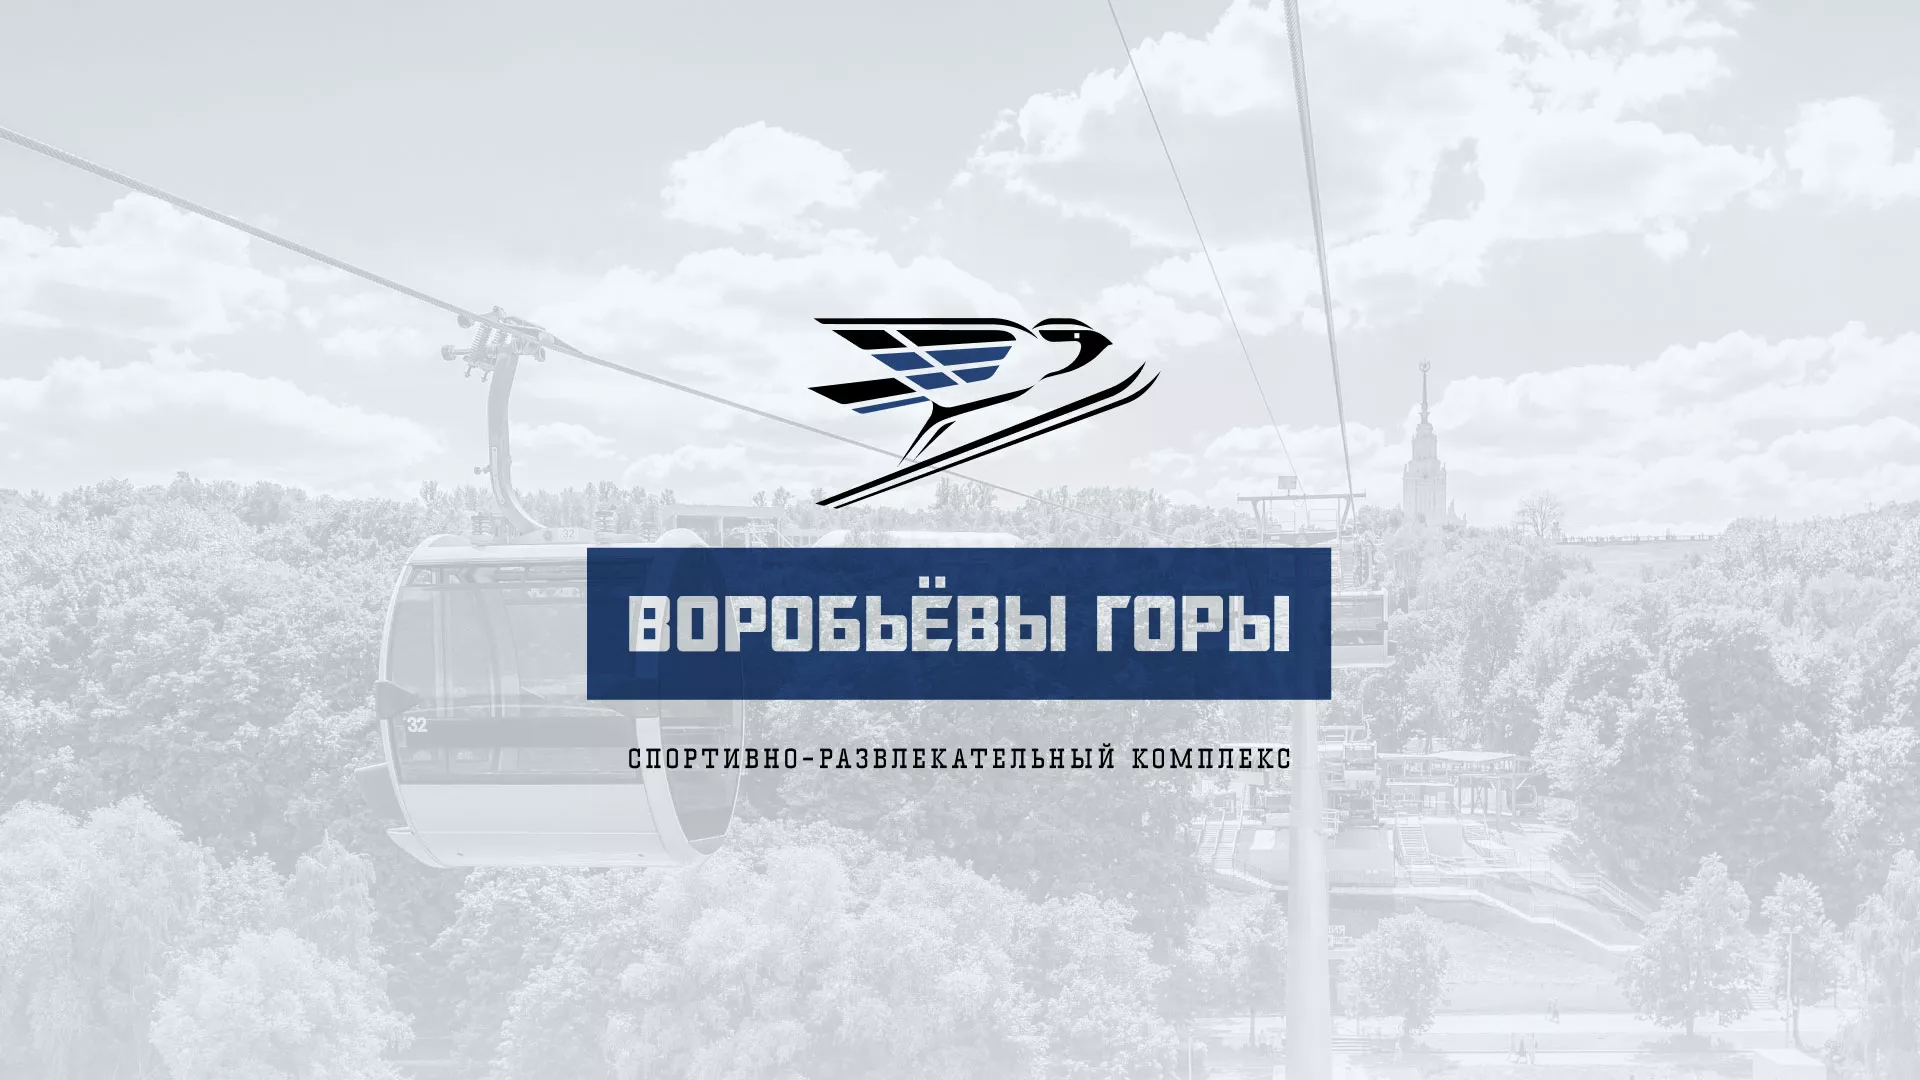 Разработка сайта в Буинске для спортивно-развлекательного комплекса «Воробьёвы горы»